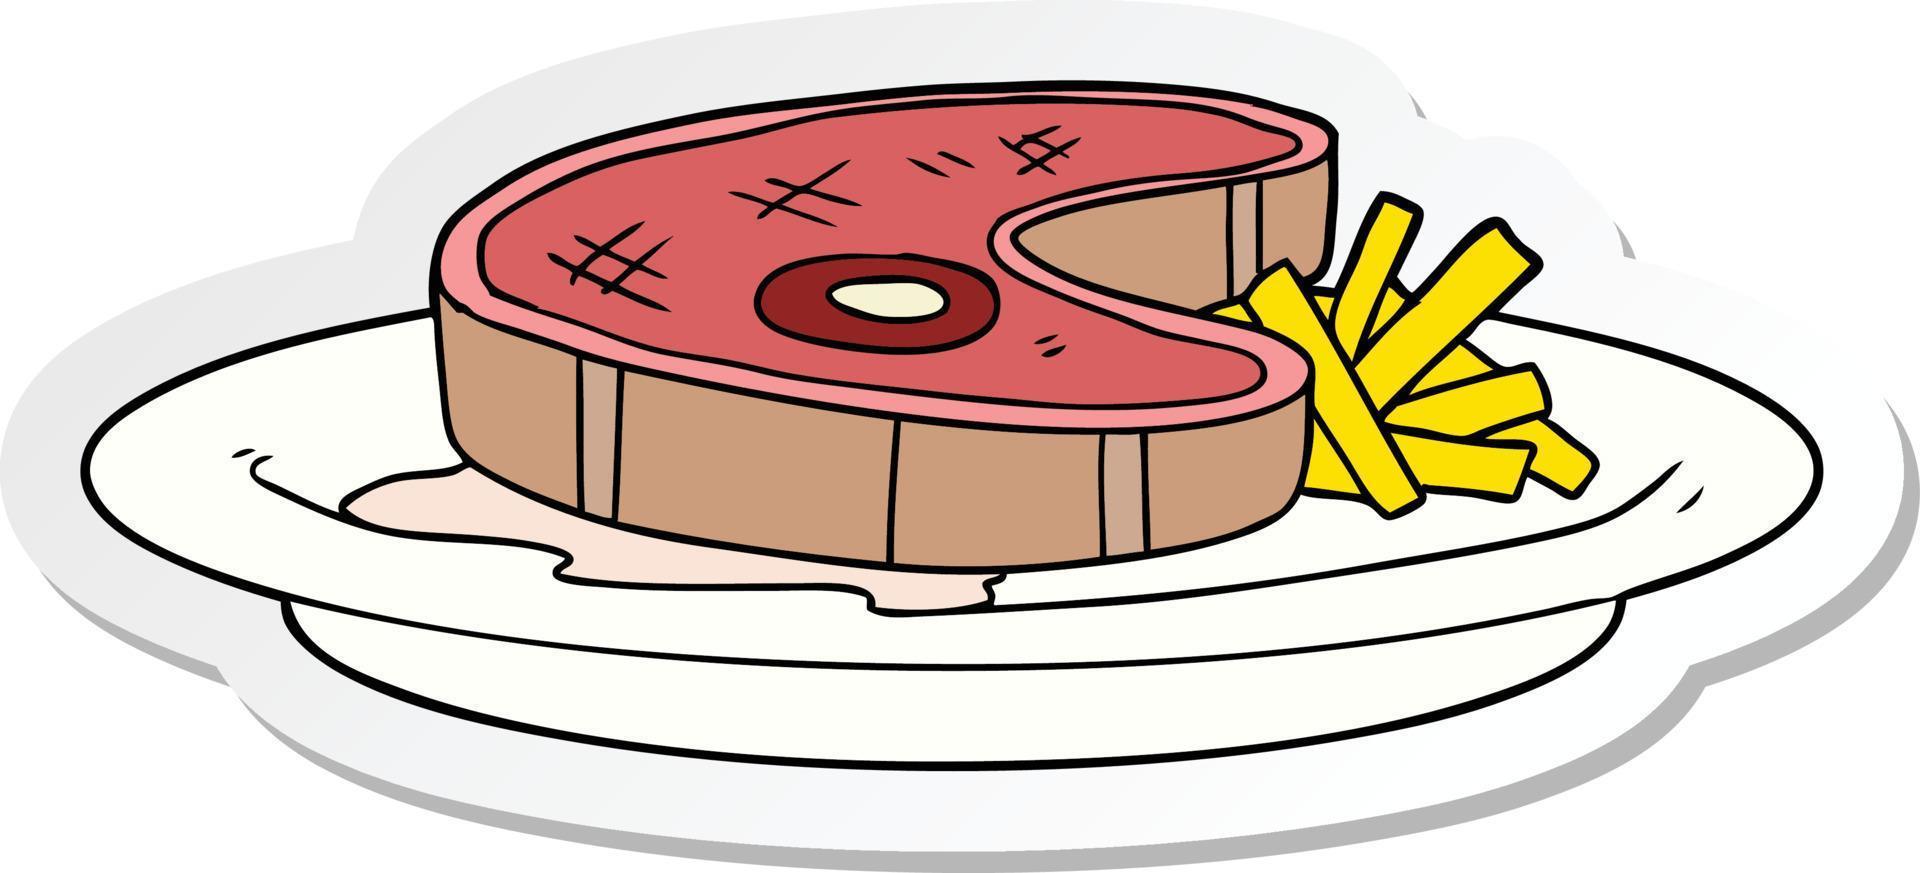 sticker of a cartoon steak dinner vector